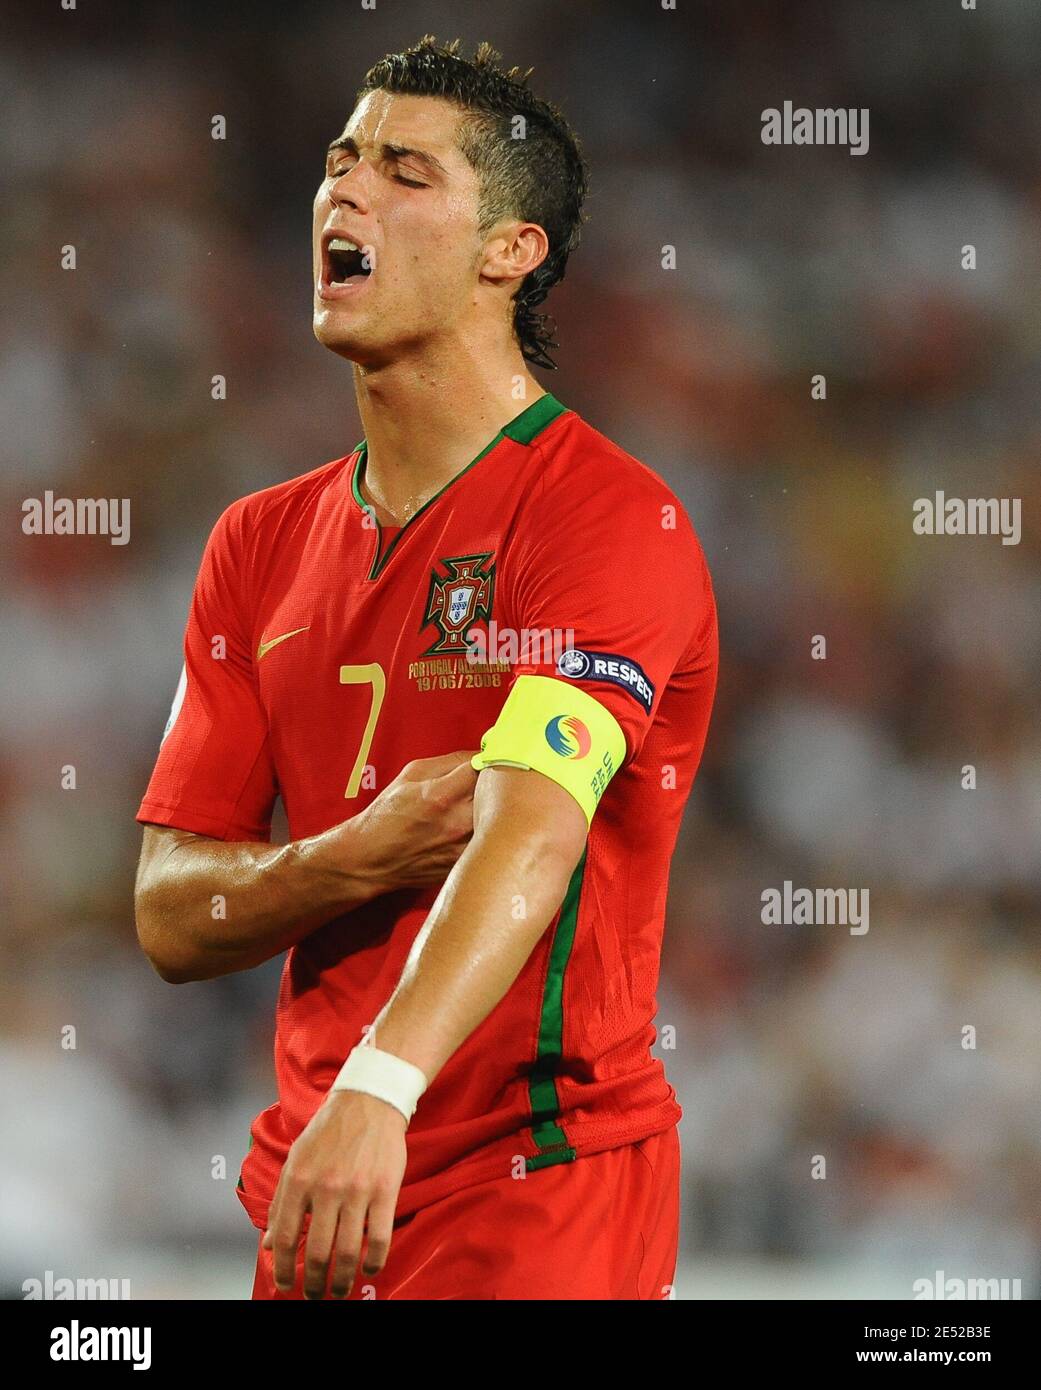 Il portoghese Cristiano Ronaldo durante l'Euro 2008, finale del quarto del Campionato europeo UEFA, Portogallo contro Germania allo stadio St. Jakob-Park di Basilea, Svizzera, il 19 giugno 2008. La Germania ha vinto 3-2. Foto di Steeve McMay/Cameleon/ABACAPRESS.COM Foto Stock